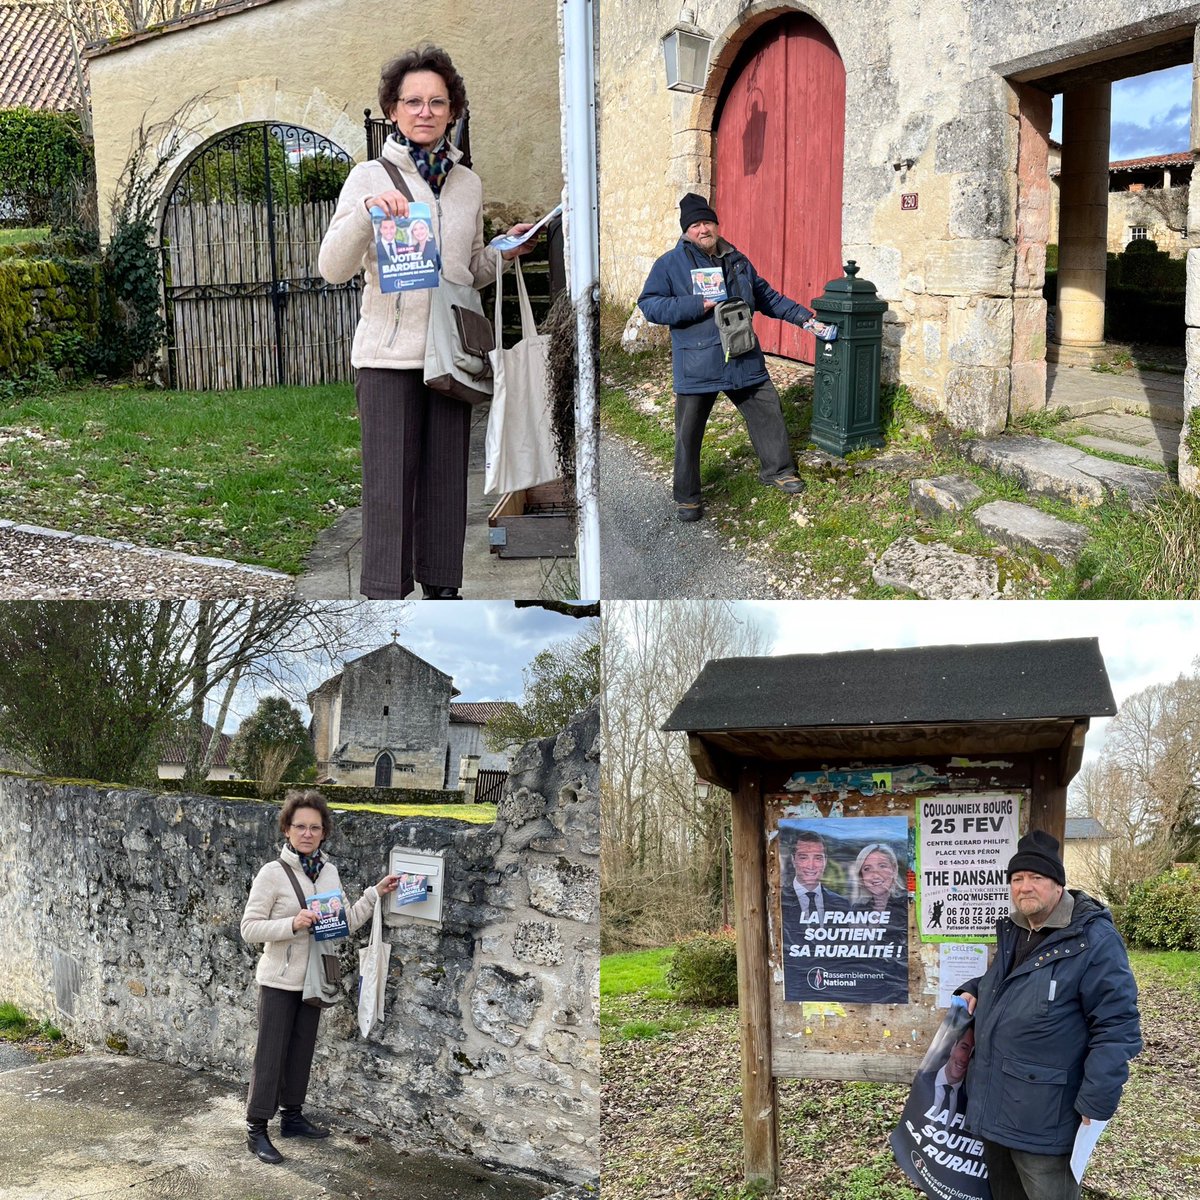 #Dordogne

Plus que jamais dans nos campagnes pour défendre la ruralité et nos paysans.

Cette UE est nuisible 
Une autre politique est possible  !

Avec #JordanBardella le #6Juin2024 

#AgriculteurEnColère
#JeSoutiensLesAgriculteurs